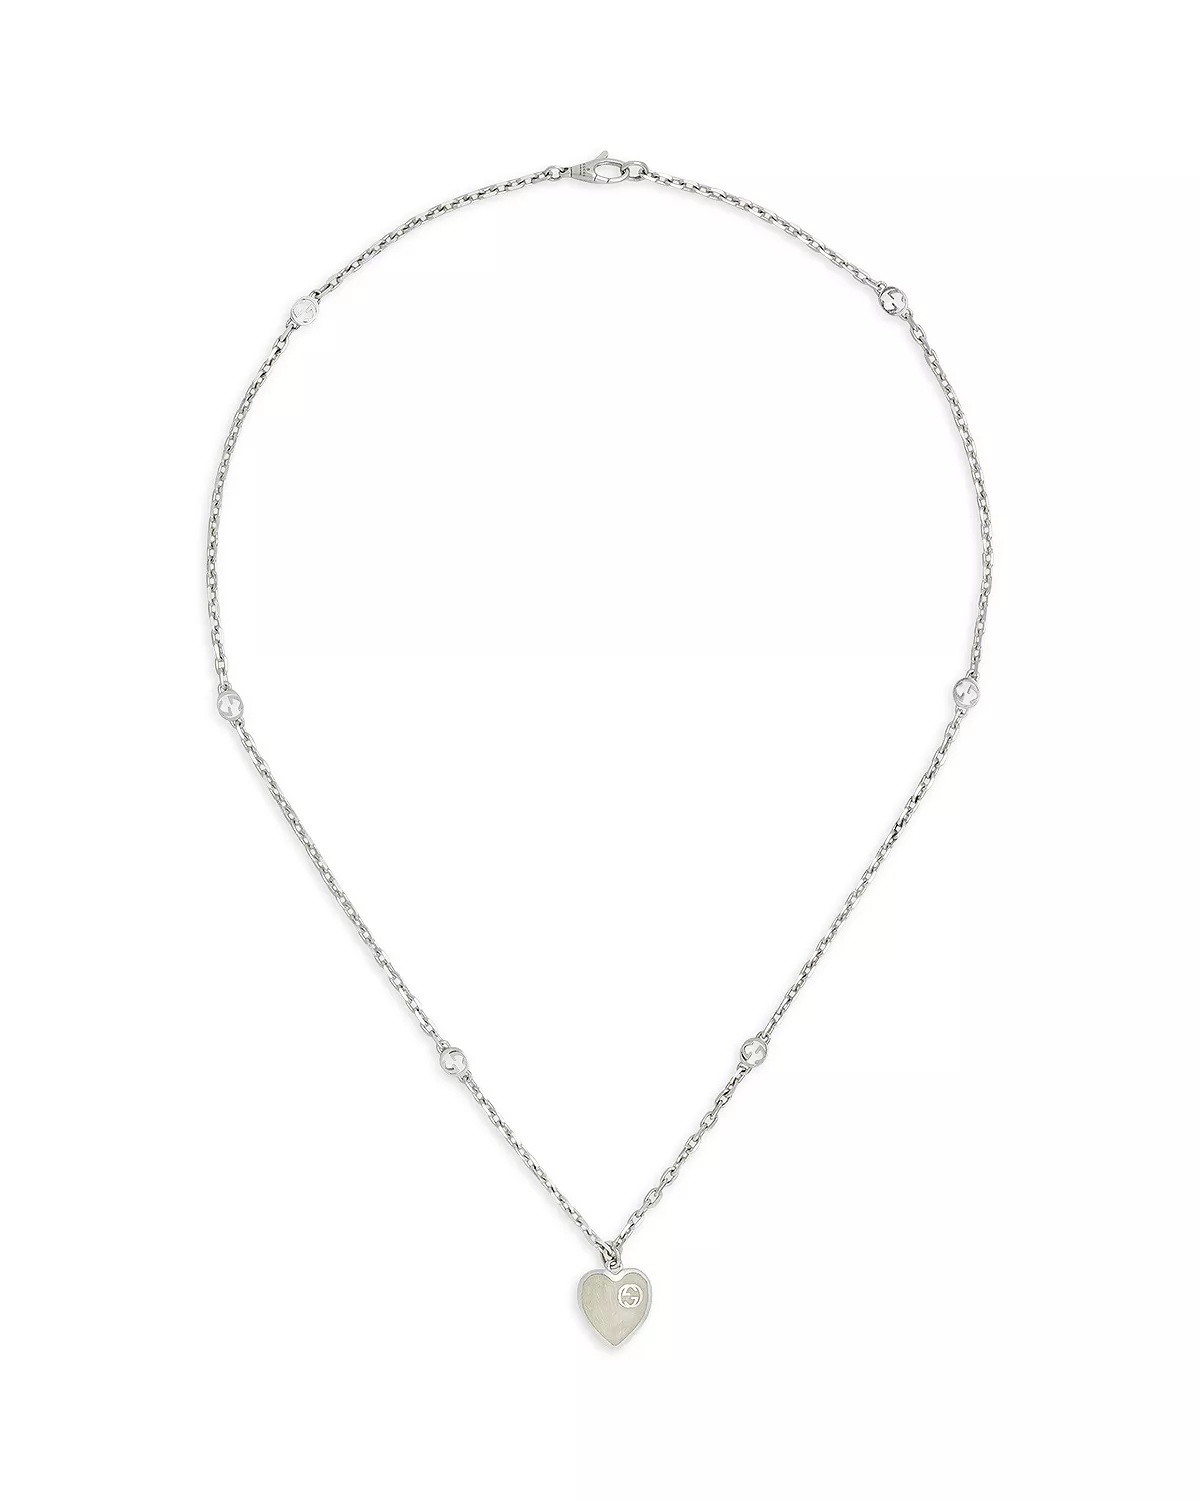 Sterling Silver Enamel Interlocking G Heart Pendant Necklace, 19.7" - 1